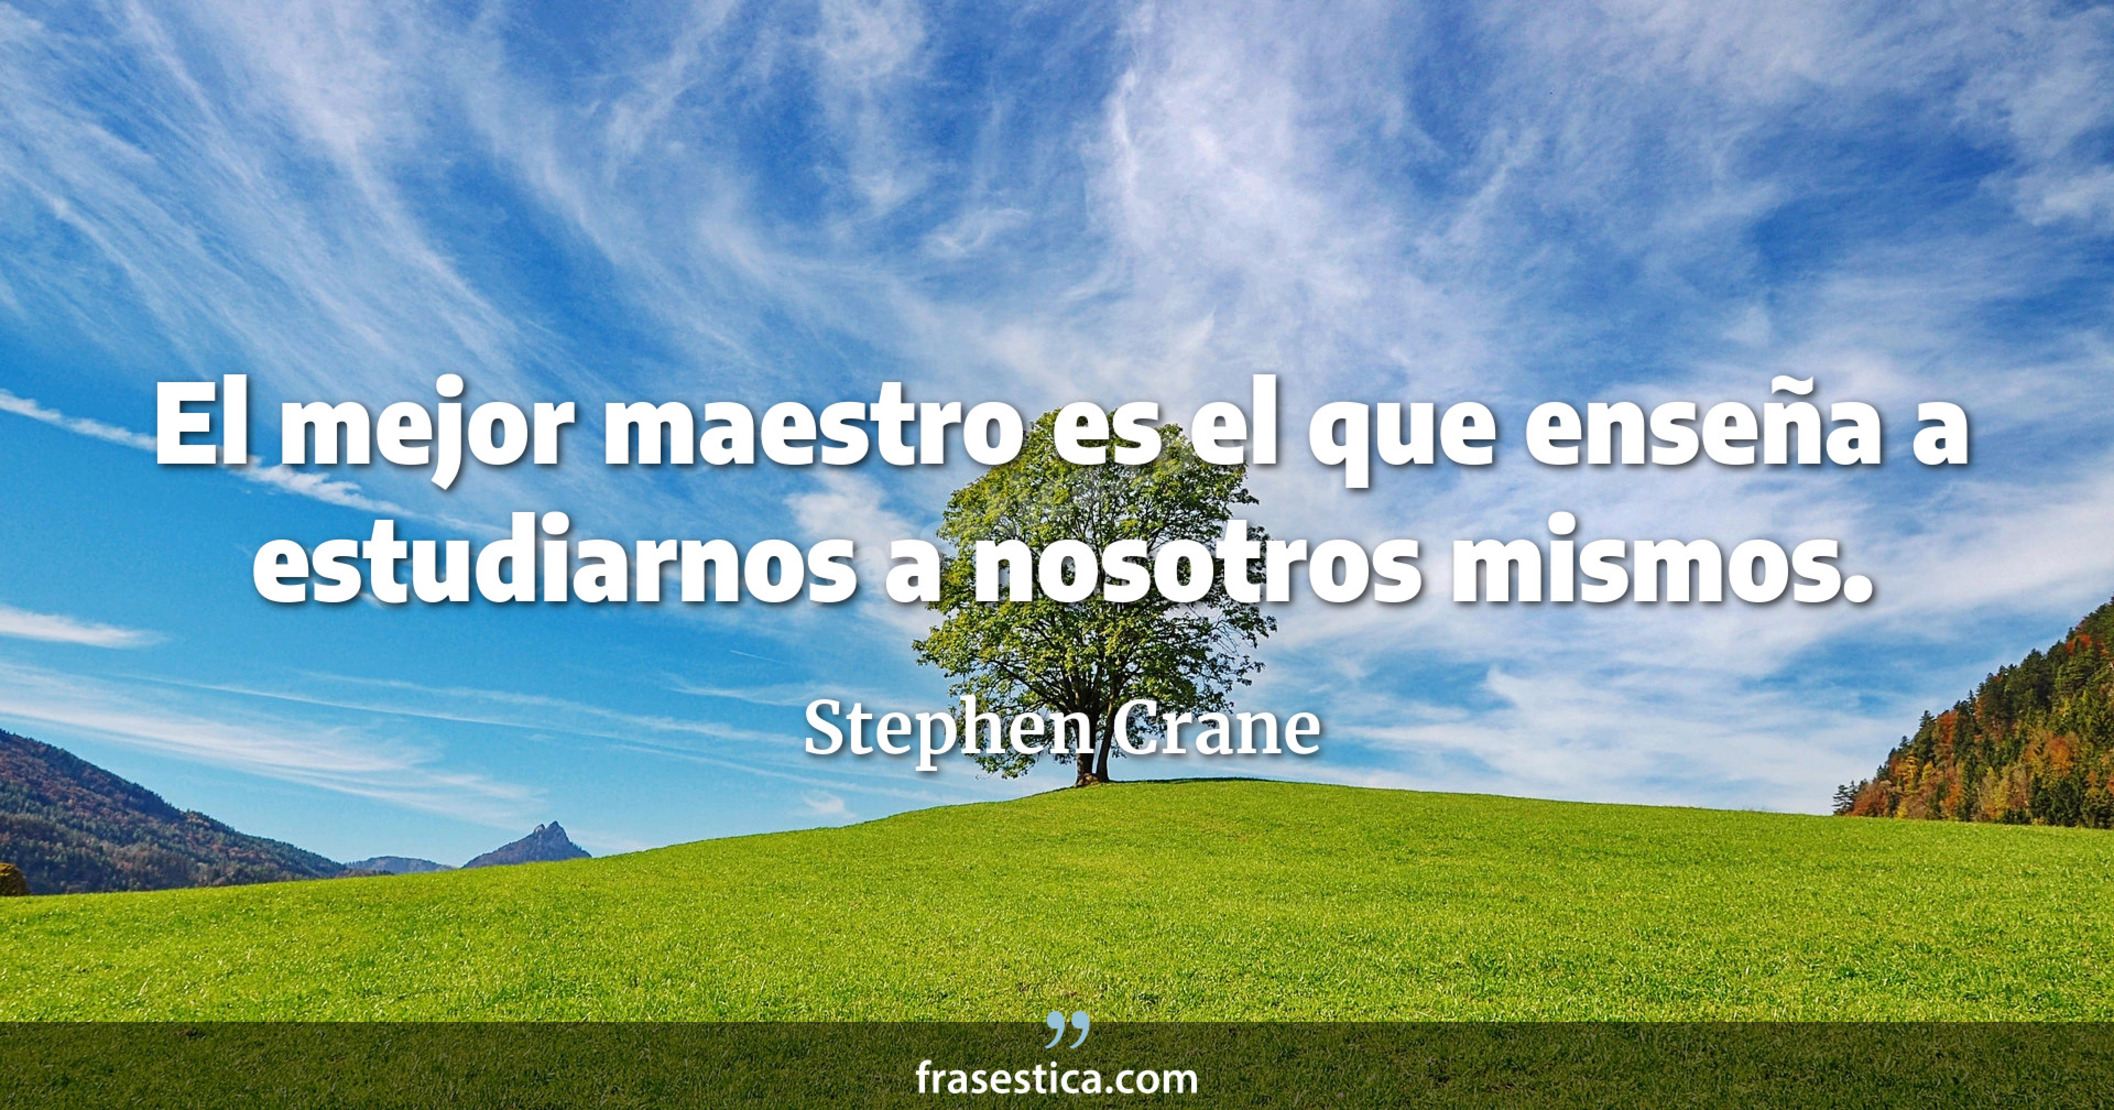 El mejor maestro es el que enseña a estudiarnos a nosotros mismos. - Stephen Crane